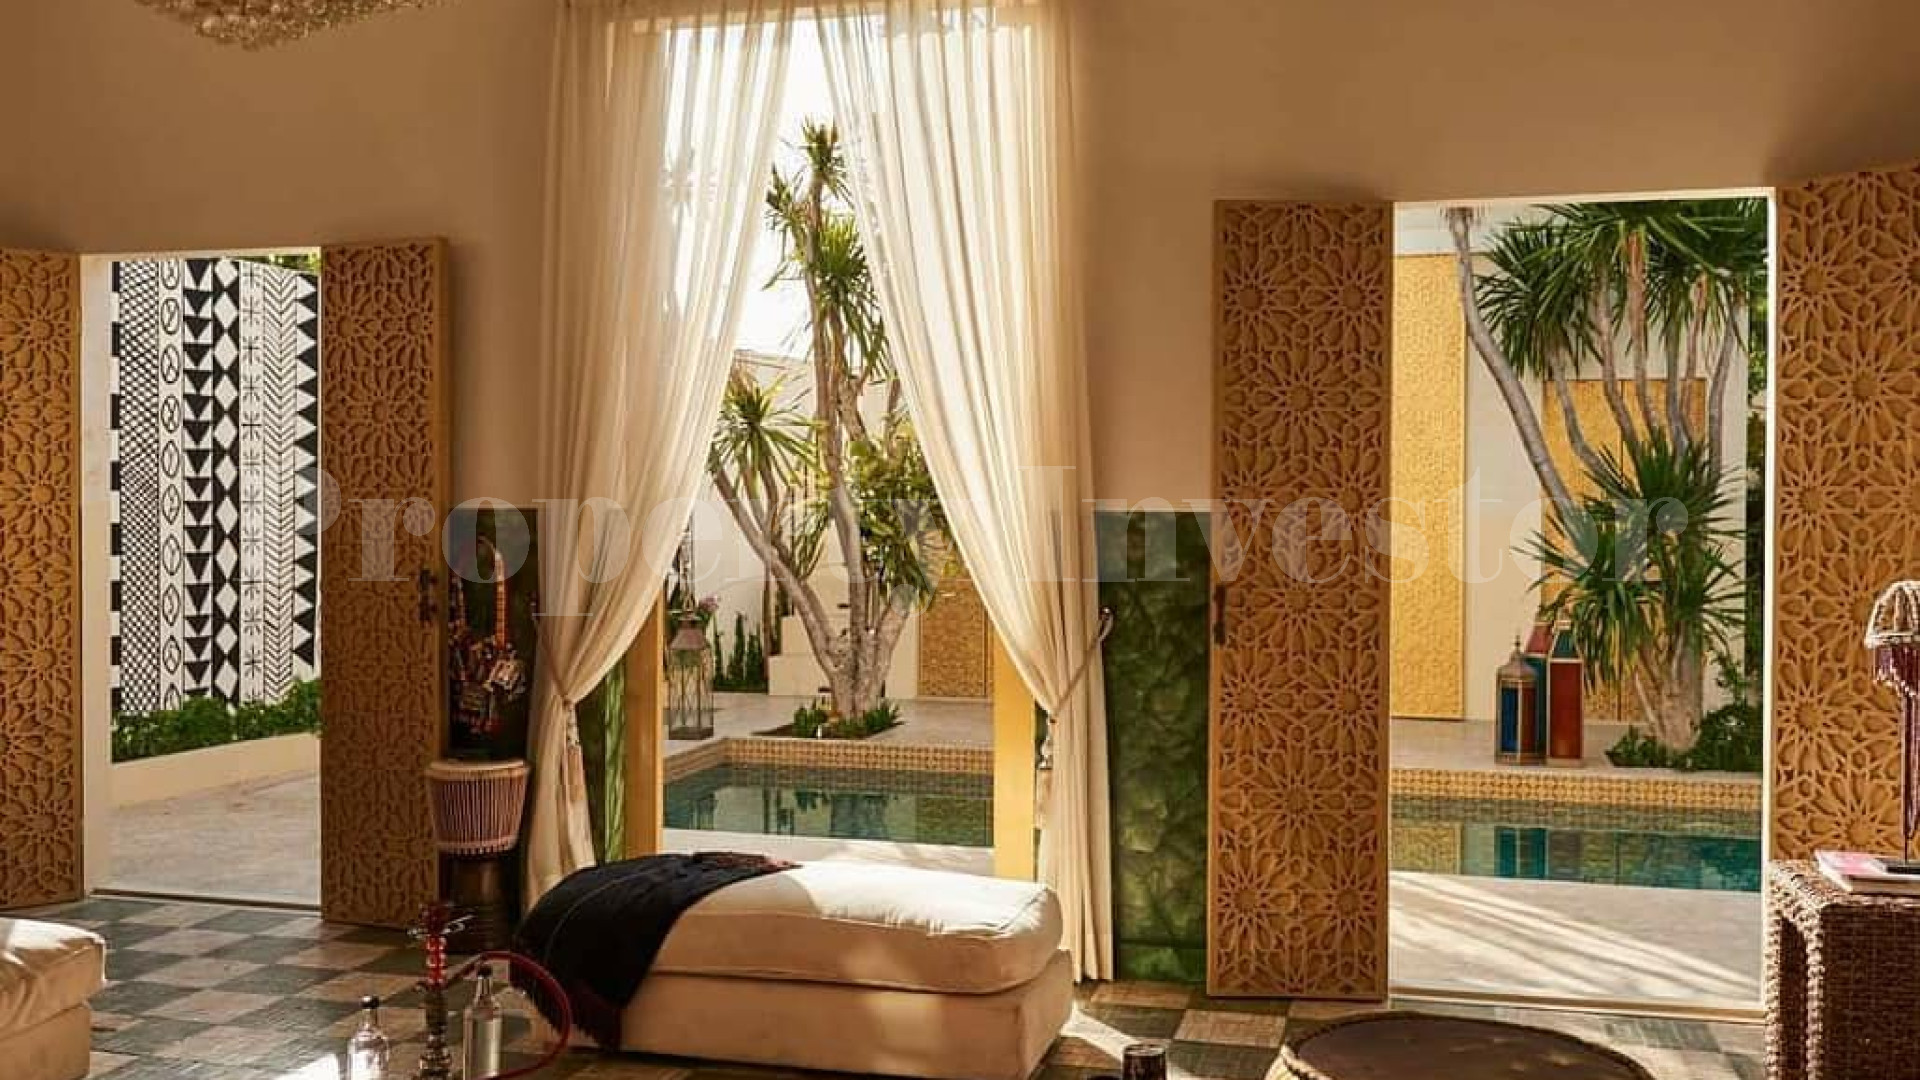 Красивая вилла на 2 спальни в марокканском стиле рядом с пляжем Сесех, Бали